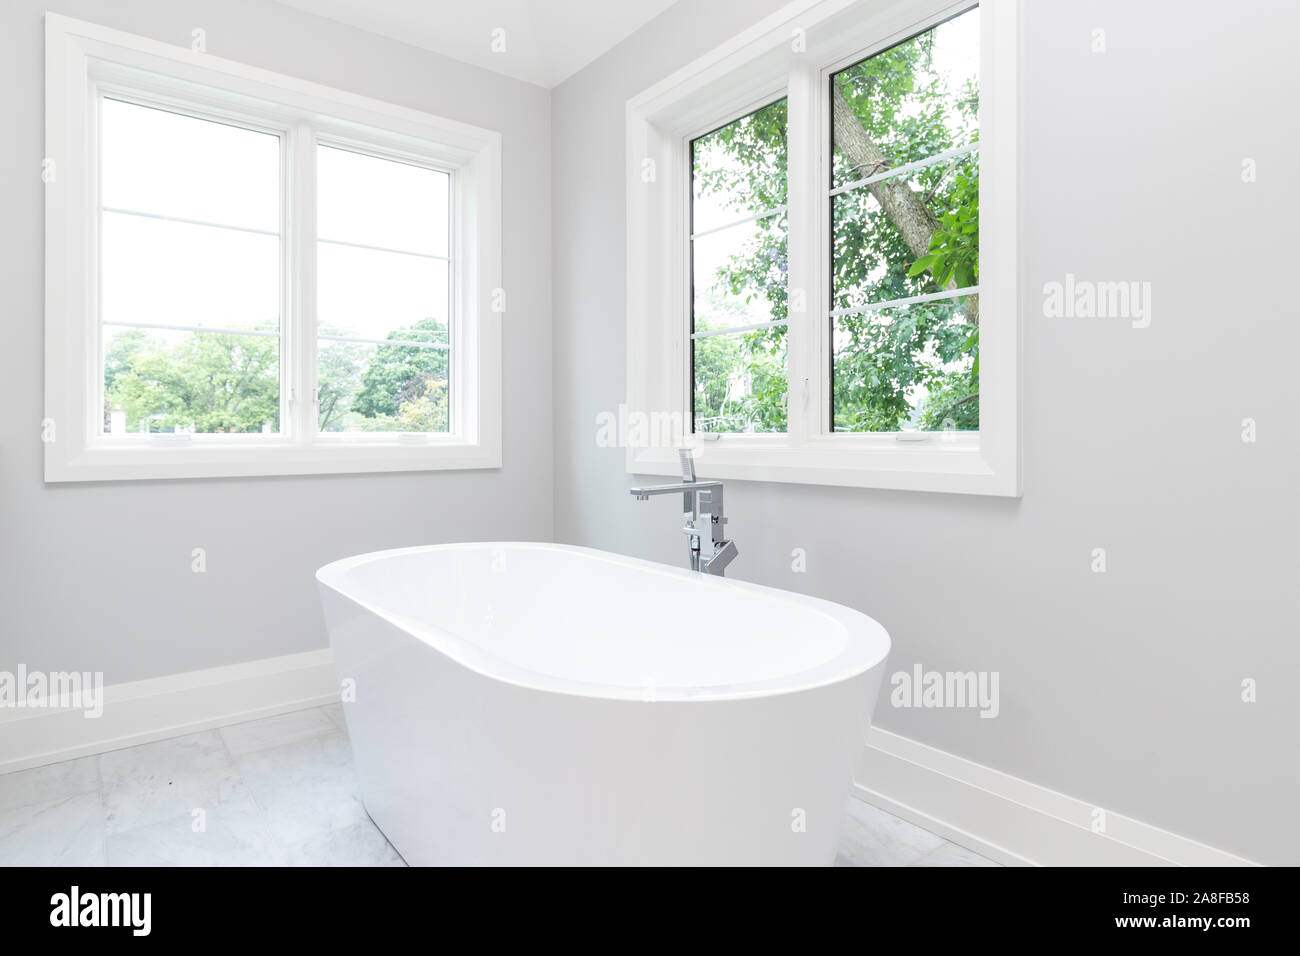 Eine schöne, weiße standalone Badewanne mit Chrom Hardware und schönen grünen Bäumen werden aus den Fenstern zu sehen. Stockfoto